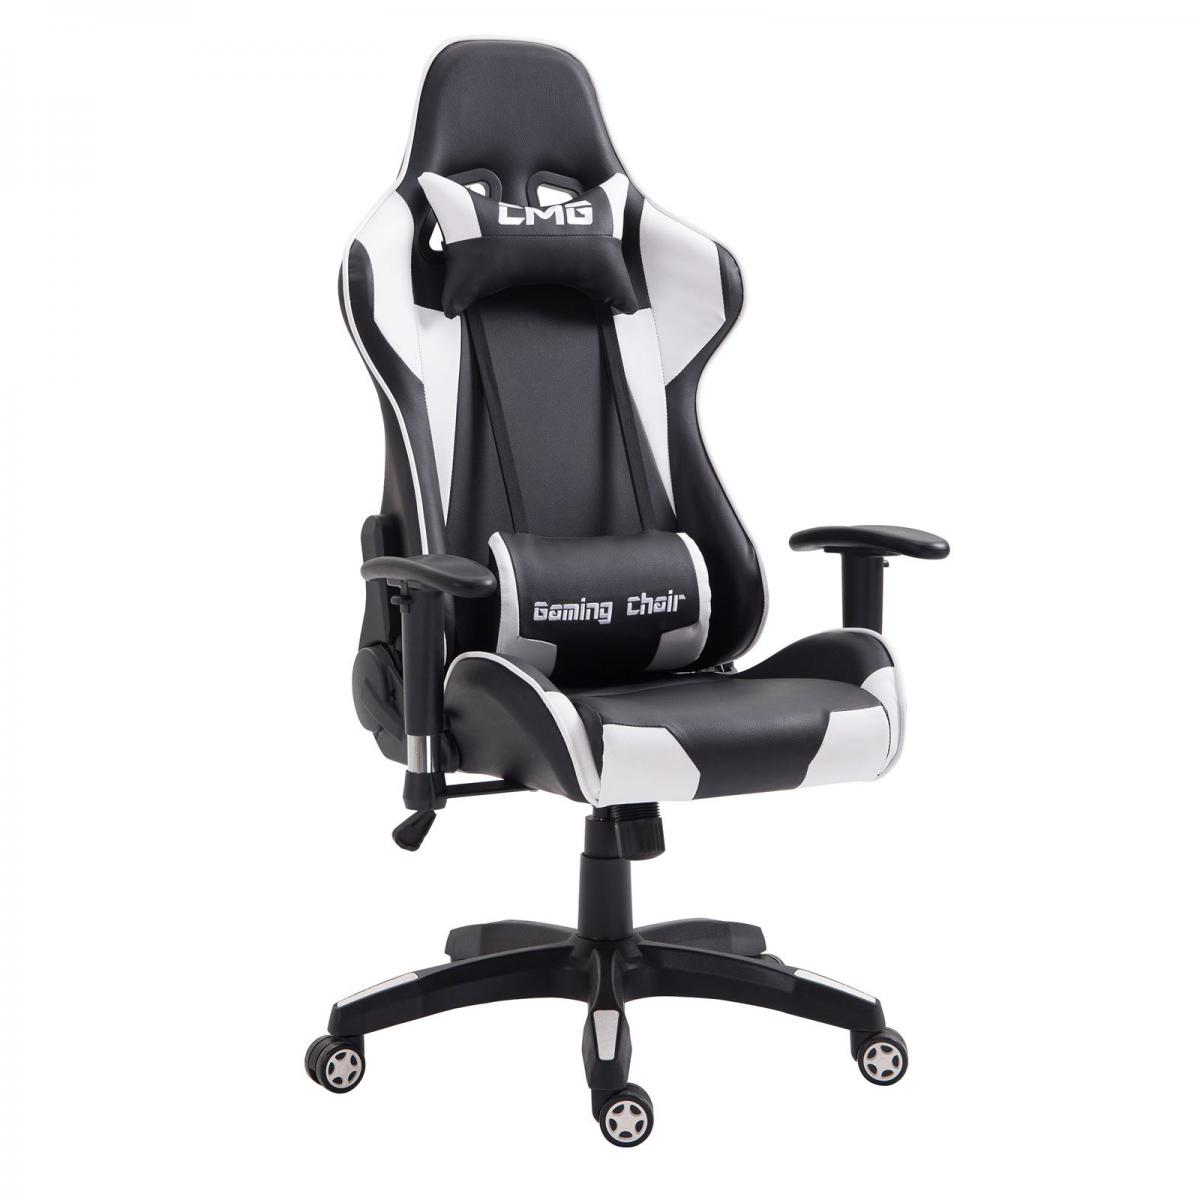 Idimex - Chaise de bureau GAMING, revêtement synthétique noir et blanc - Chaise gamer